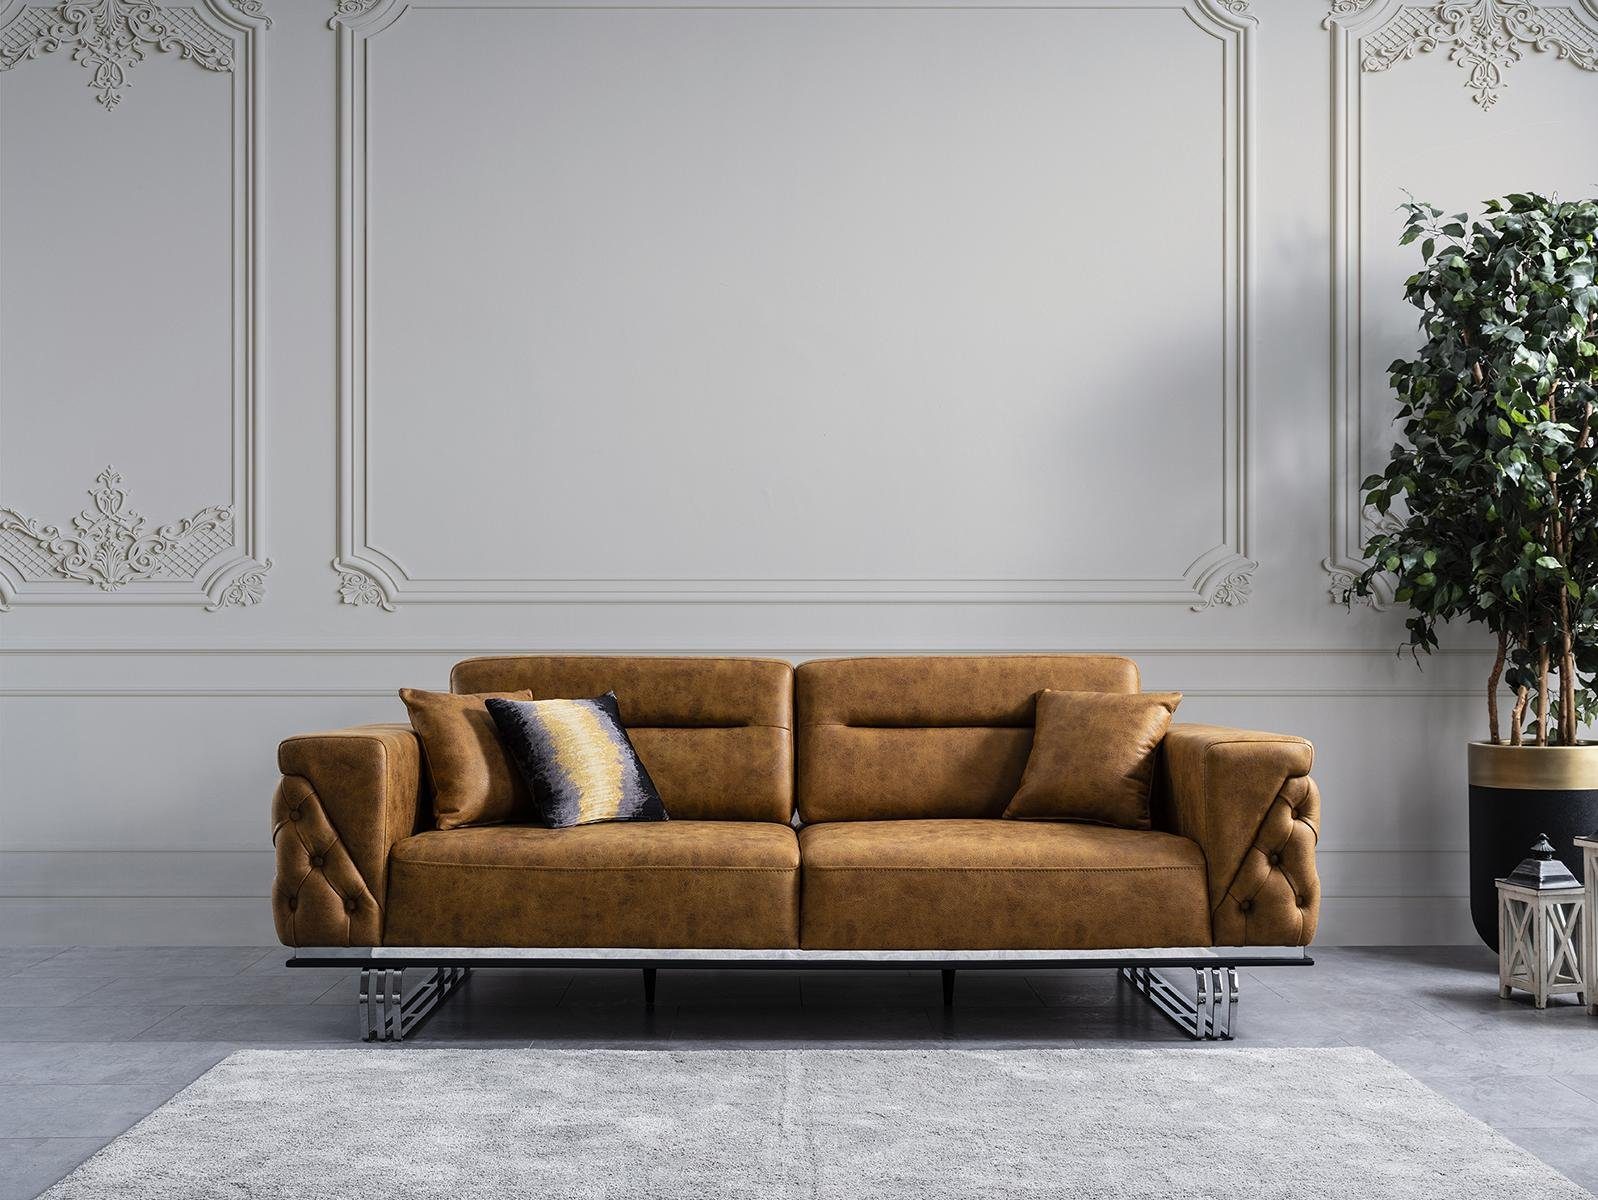 JVmoebel 3-Sitzer Sofa 3 Sitzer Wohnzimmer Design Möbel Stil Modern Neu braun Luxus